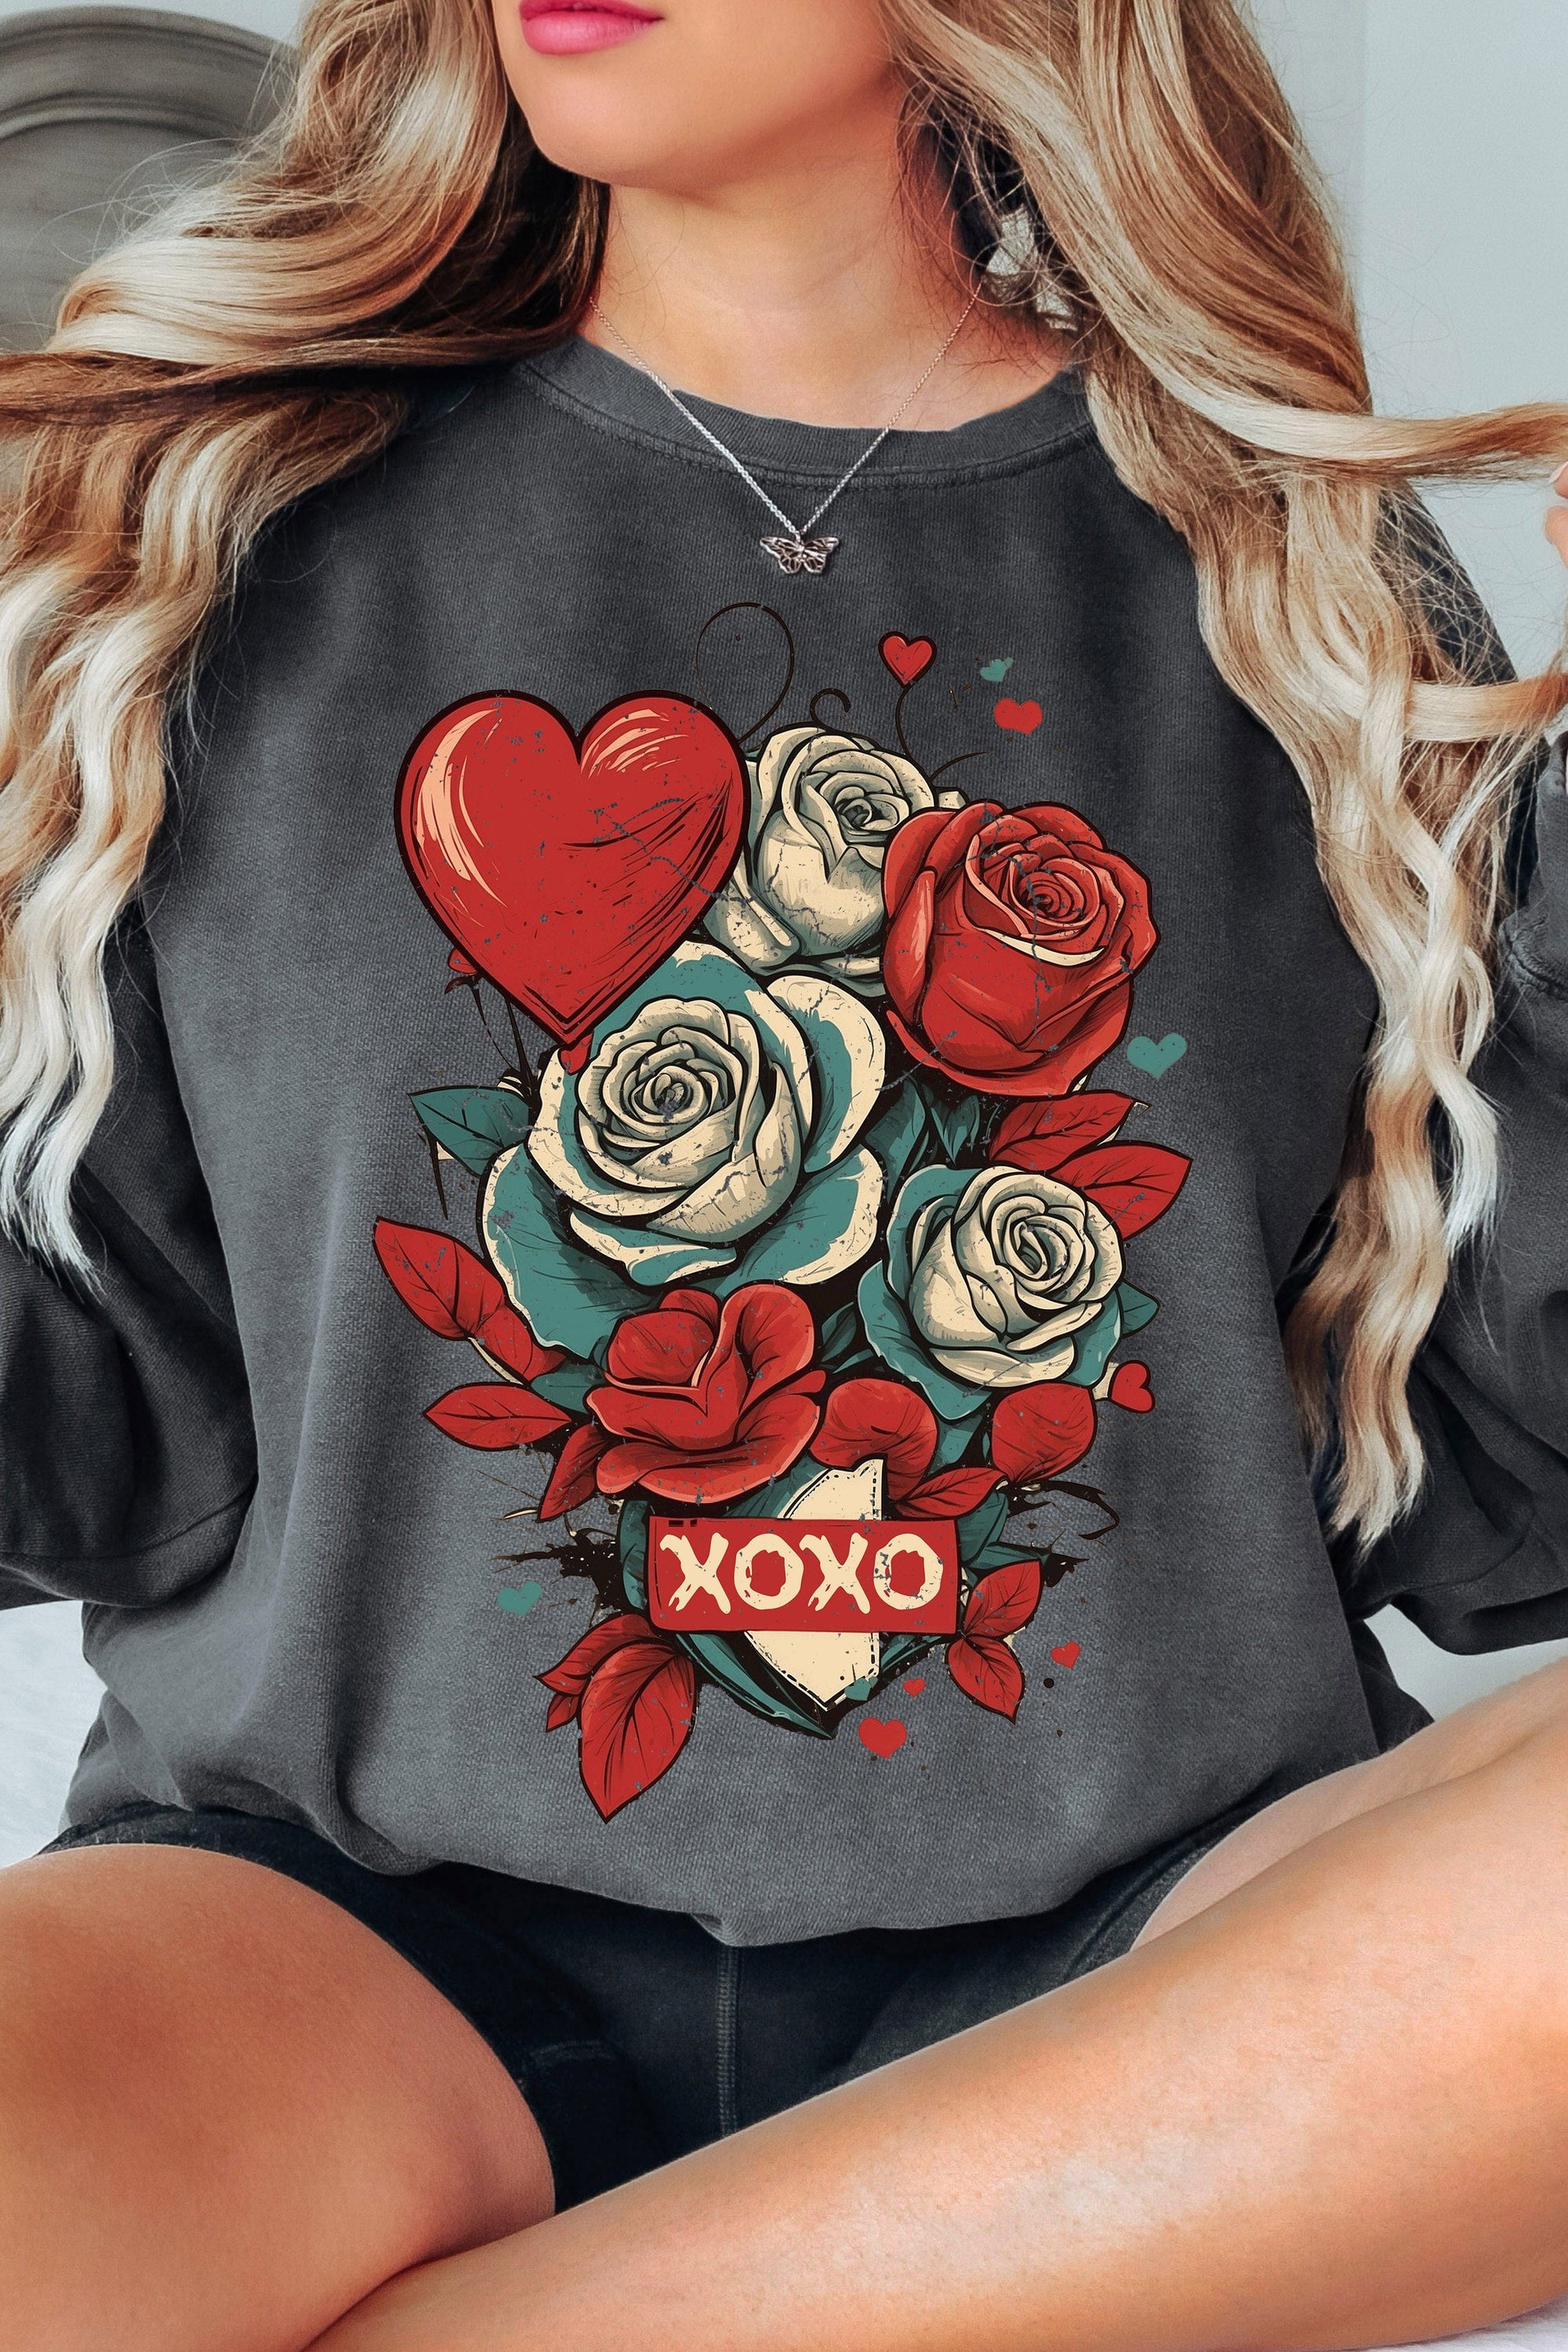 XOXO Roses Sweatshirt